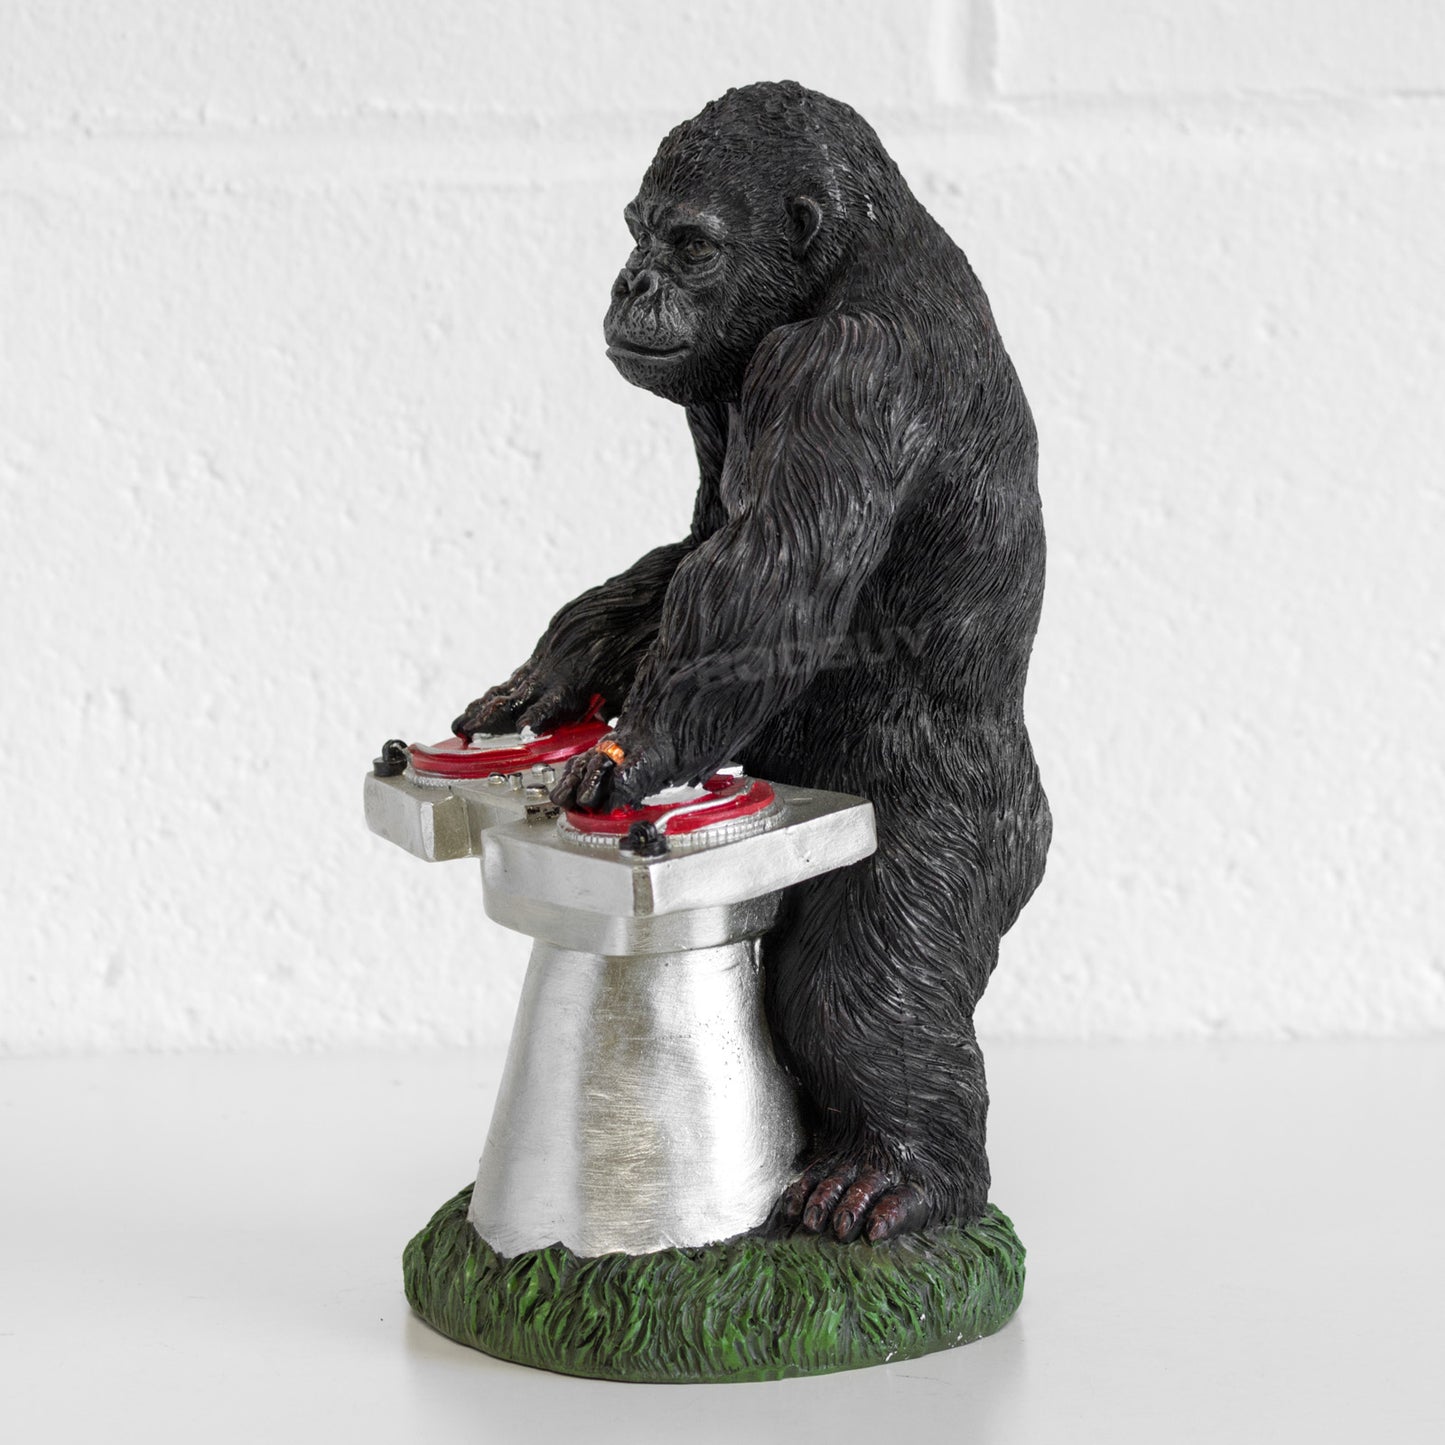 DJ Pete Kong Resin Gorilla with Decks Garden Ornament